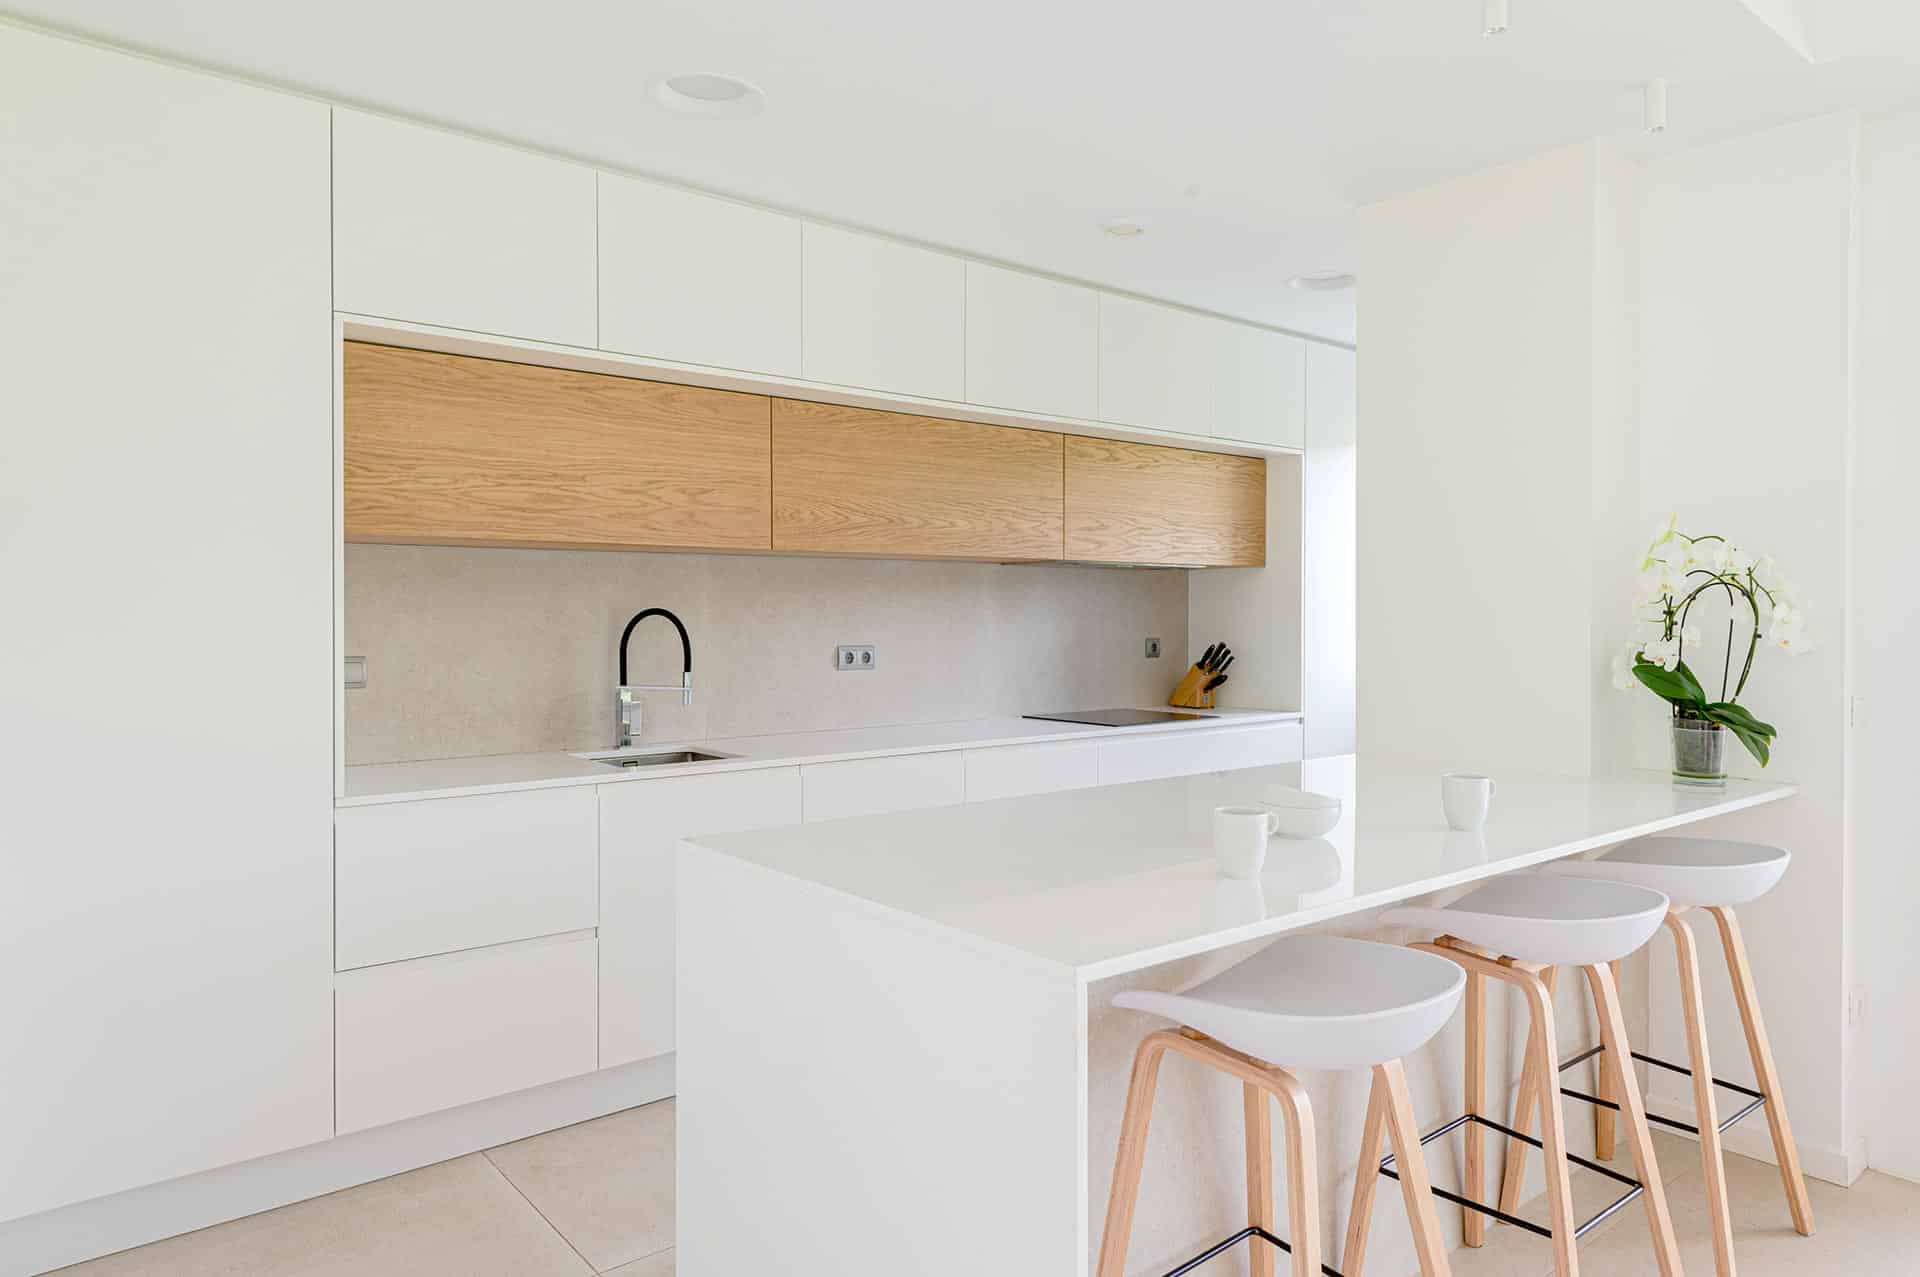 Isla de cocina blanca minimalista de vivienda moderna unifamiliar diseñada por Moah Arquitectos en Pámanes